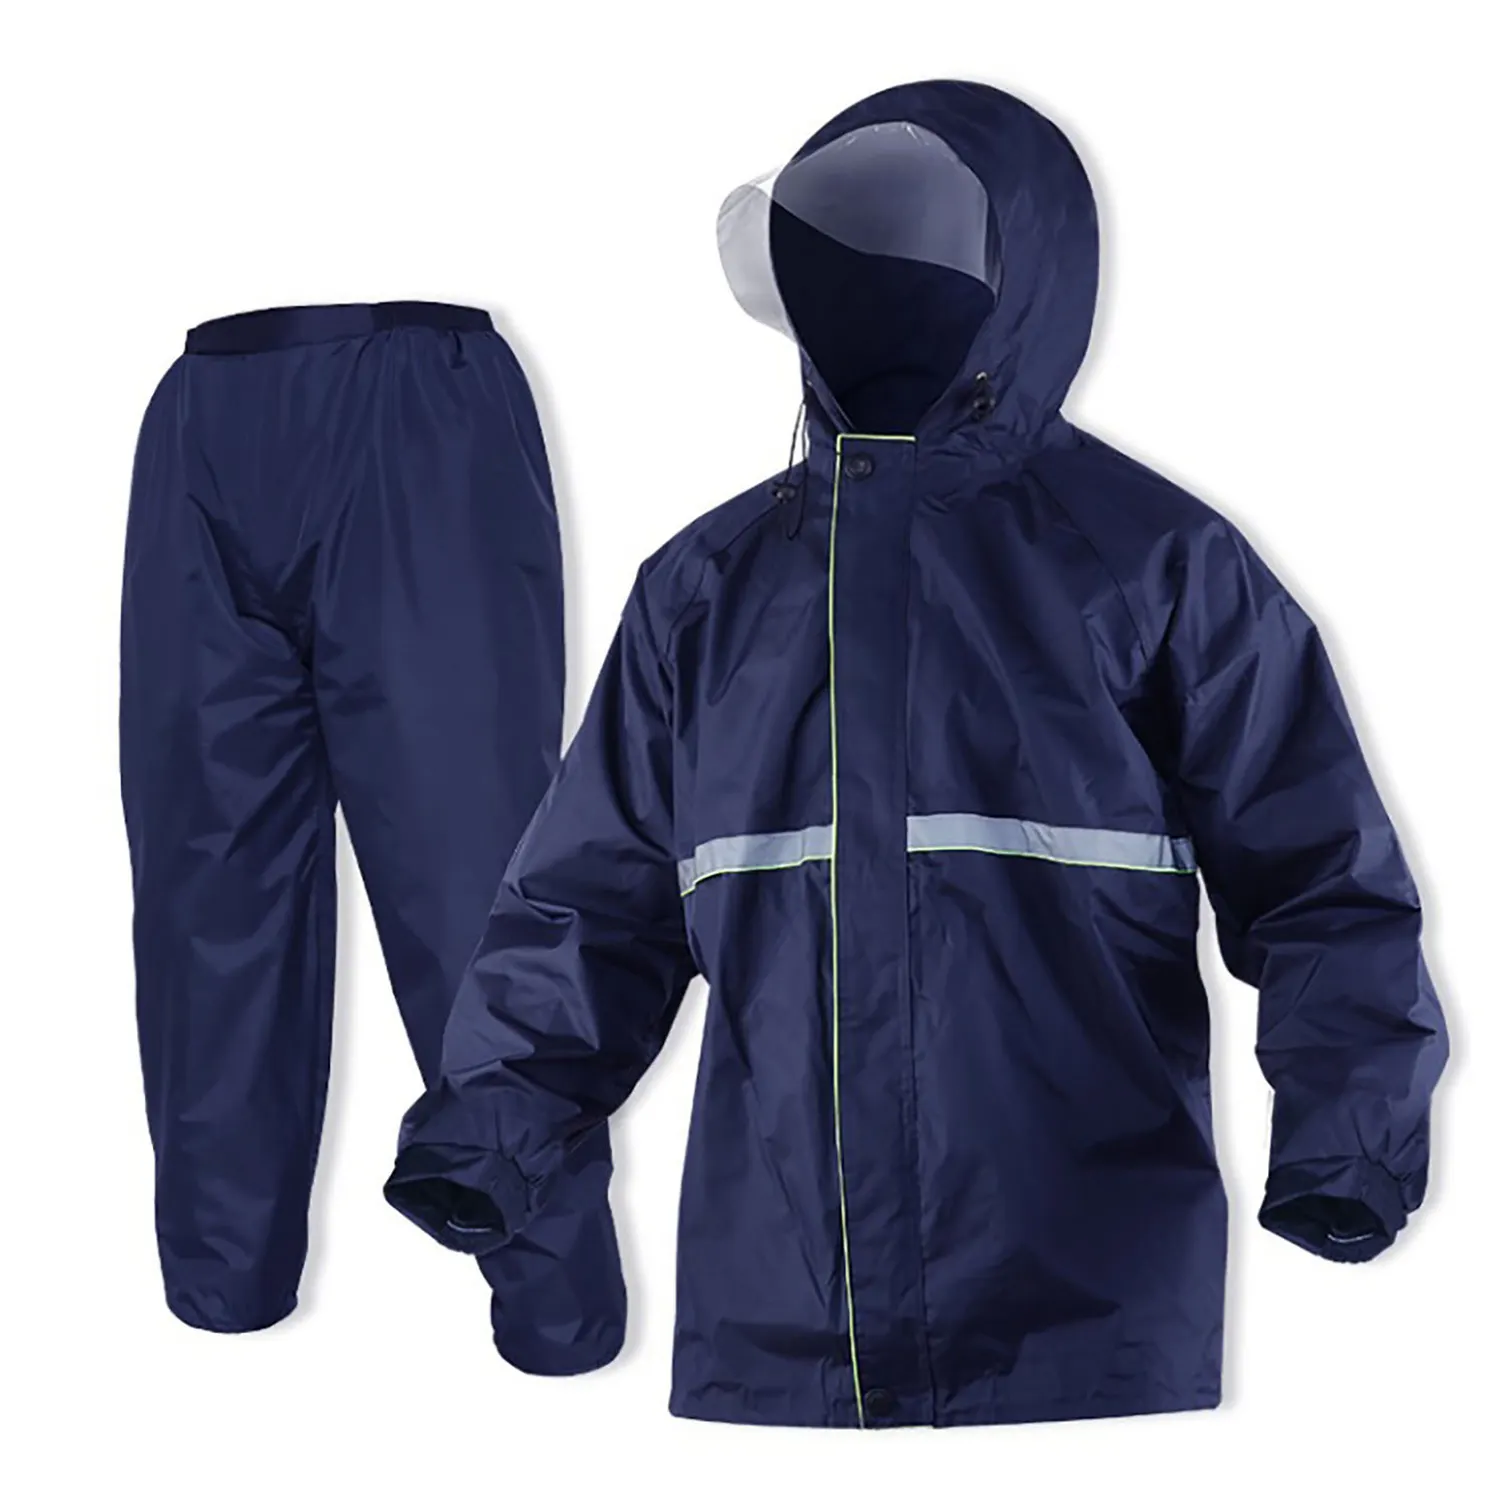 नवीनतम बारिश सूट निविड़ अंधकार जैकेट निविड़ अंधकार पंत मोटरसाइकिल और Workwear टेप सील और अच्छी गुणवत्ता के साथ निविड़ अंधकार बरसाती